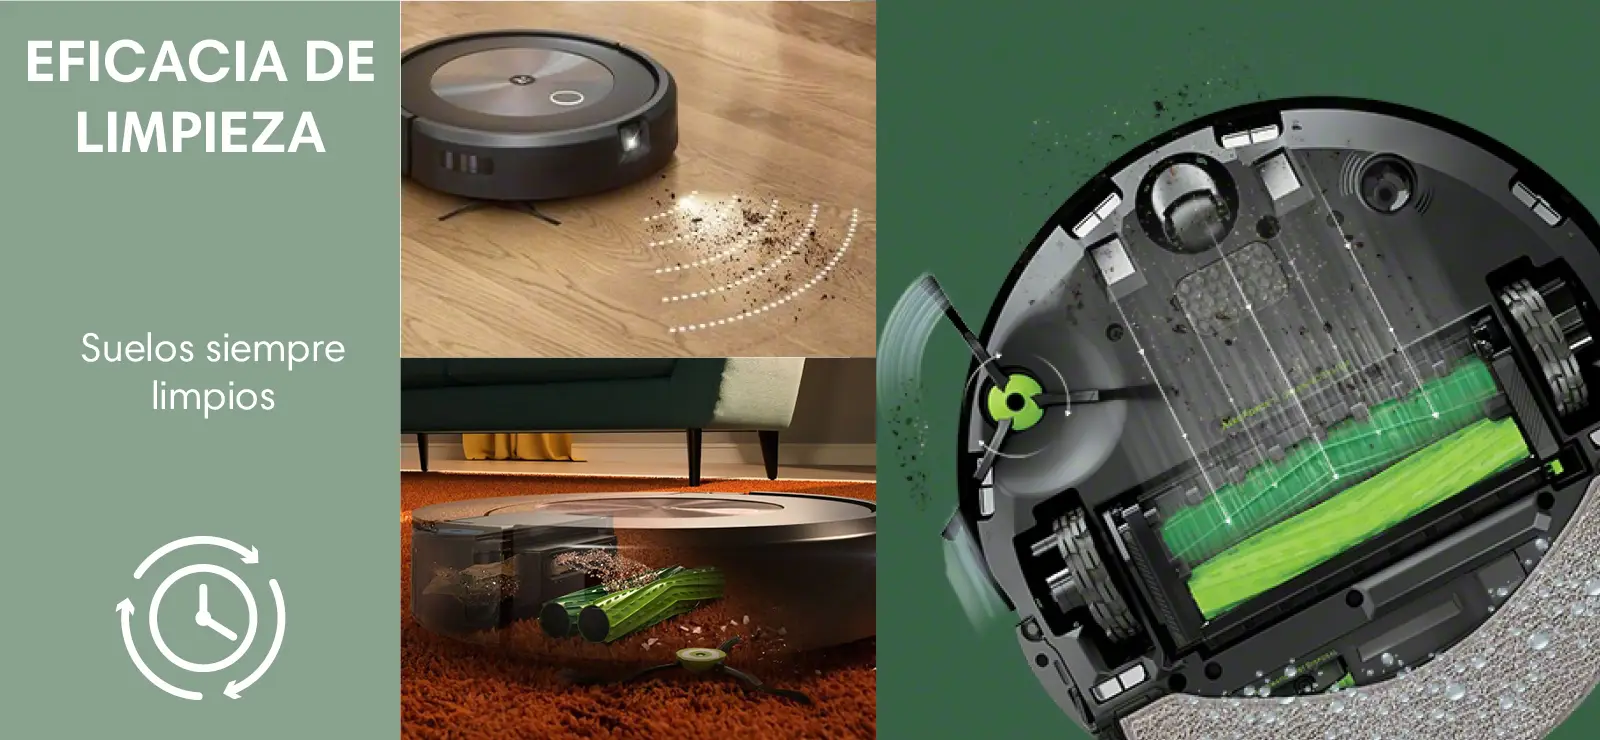 Aspirador Robot Roomba iRobot i5 - Limpieza 4 Fases, Mapas Inteligentes,  Mopa Fregado